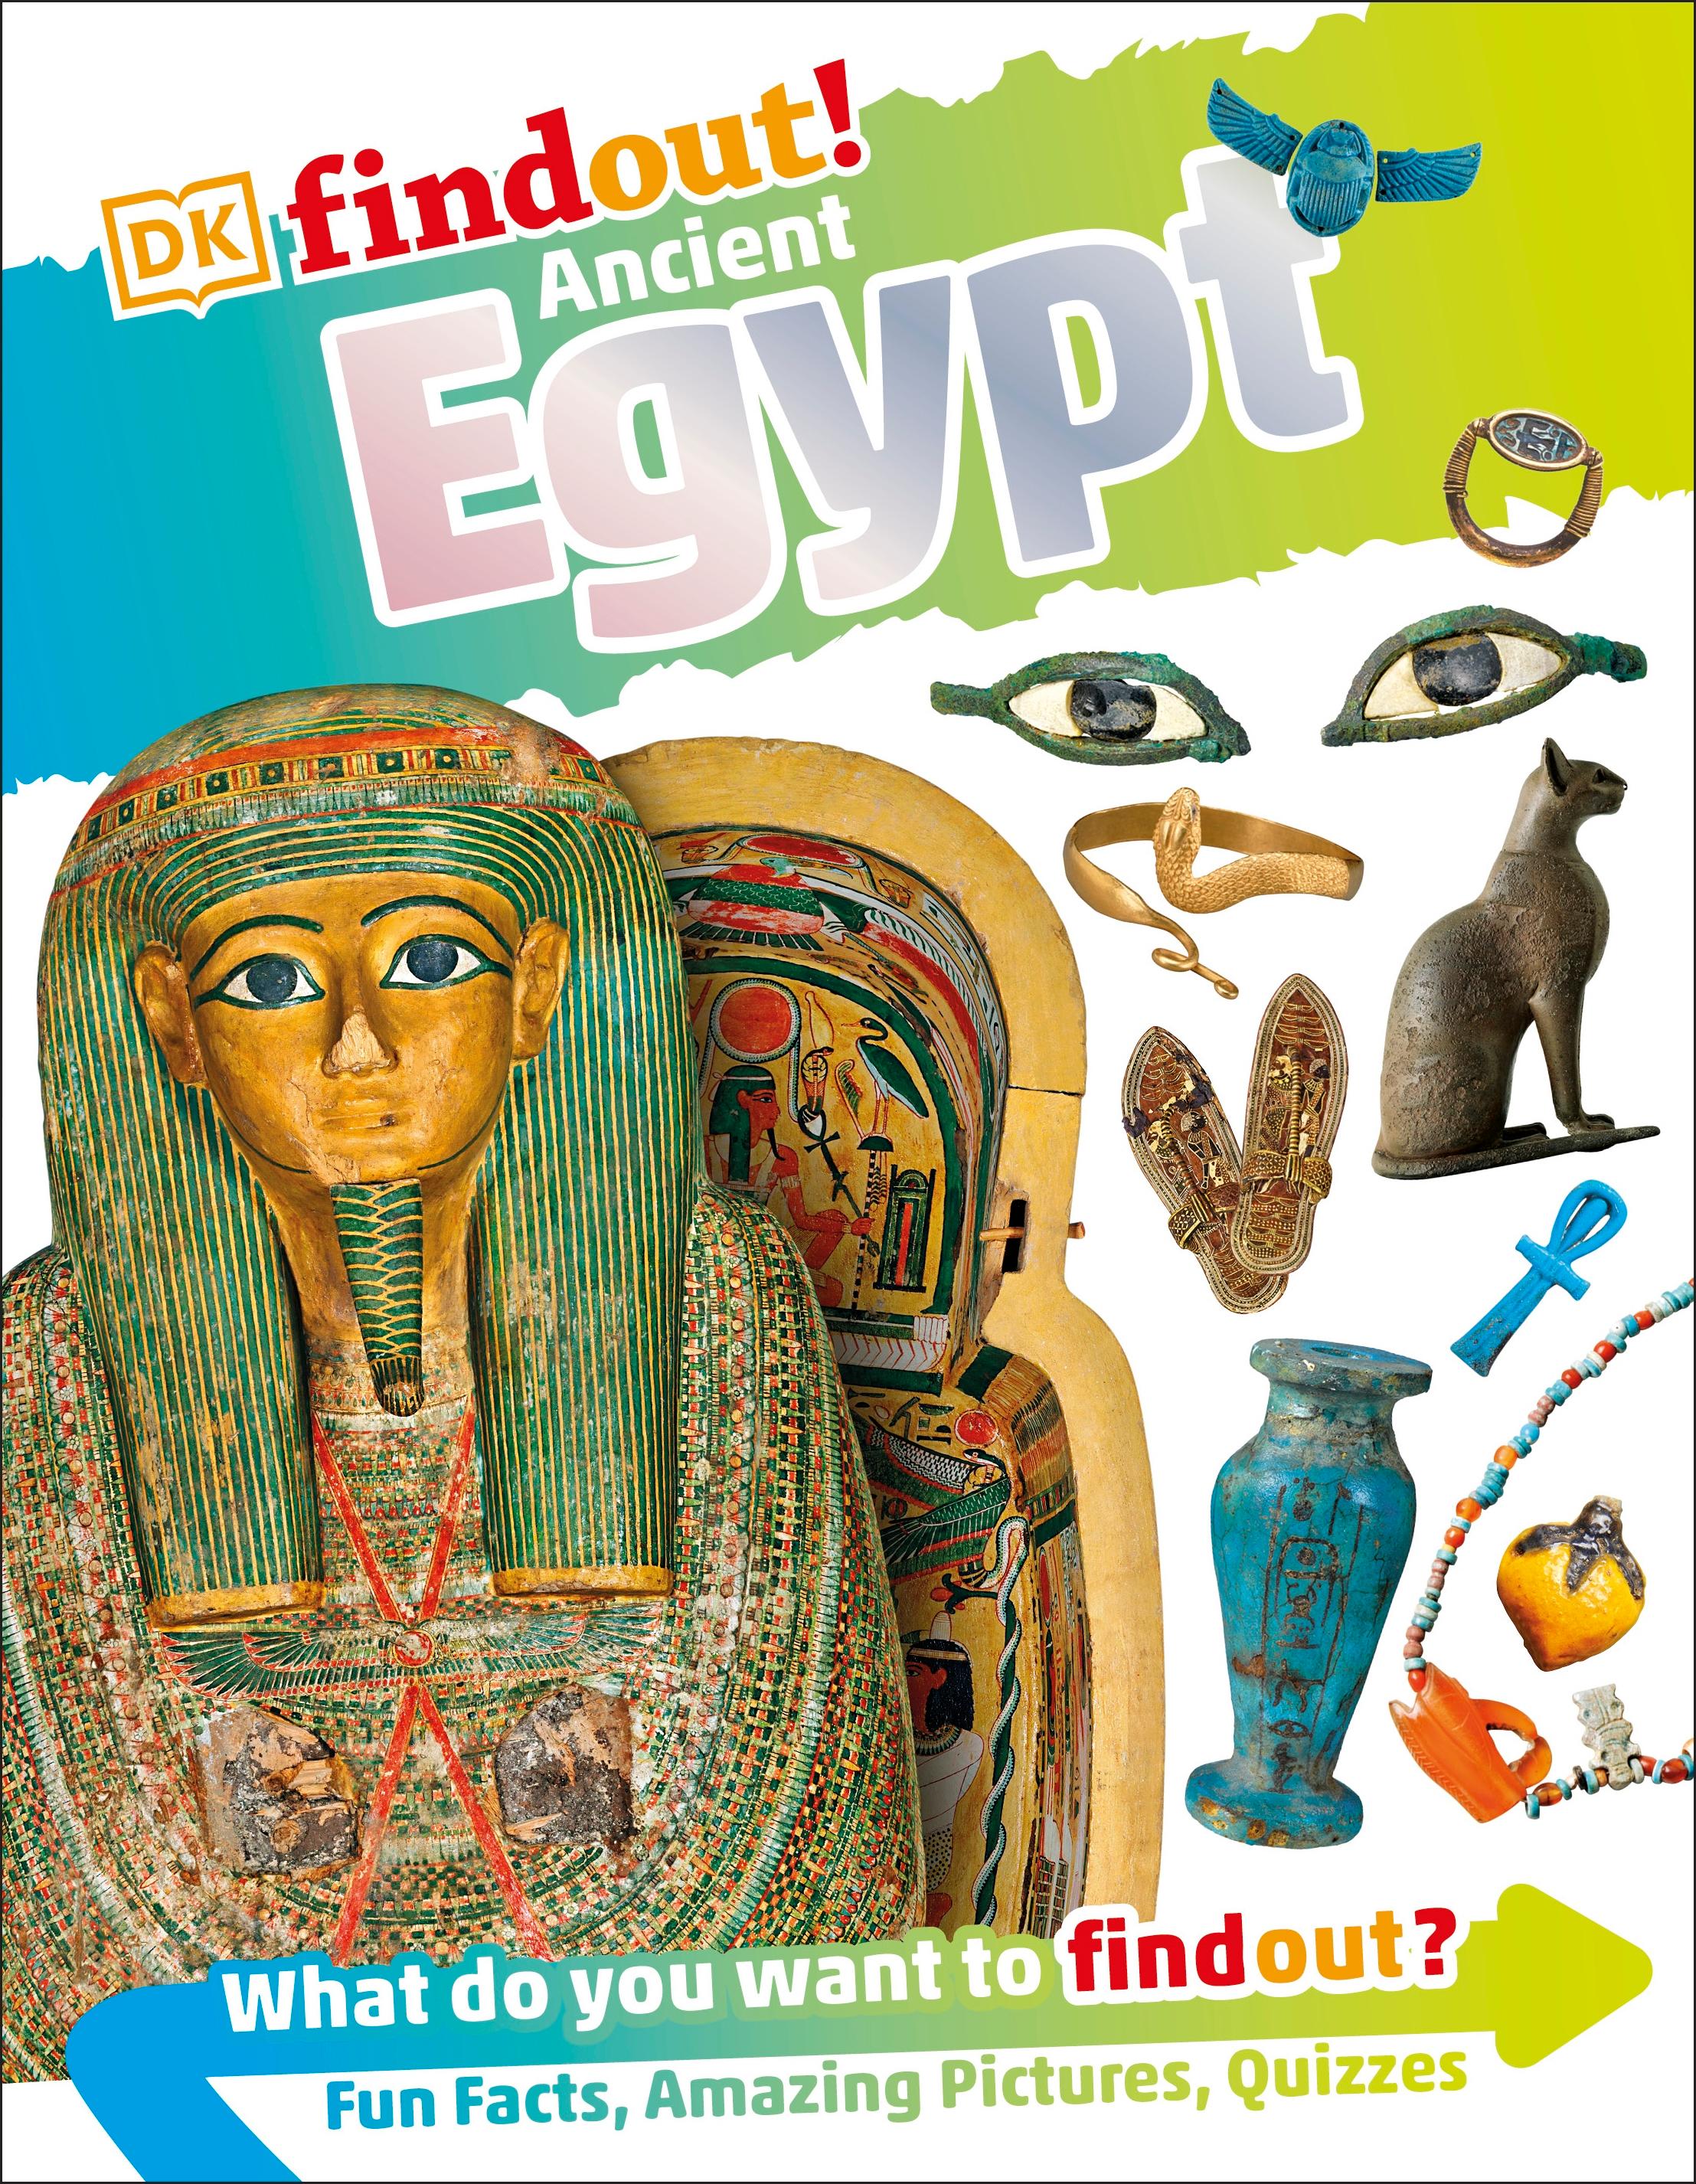 DKfindout! Ancient Egypt / DK / Taschenbuch / DK find out! / 64 S. / Englisch / 2017 / Dorling Kindersley Ltd / EAN 9780241282779 - DK